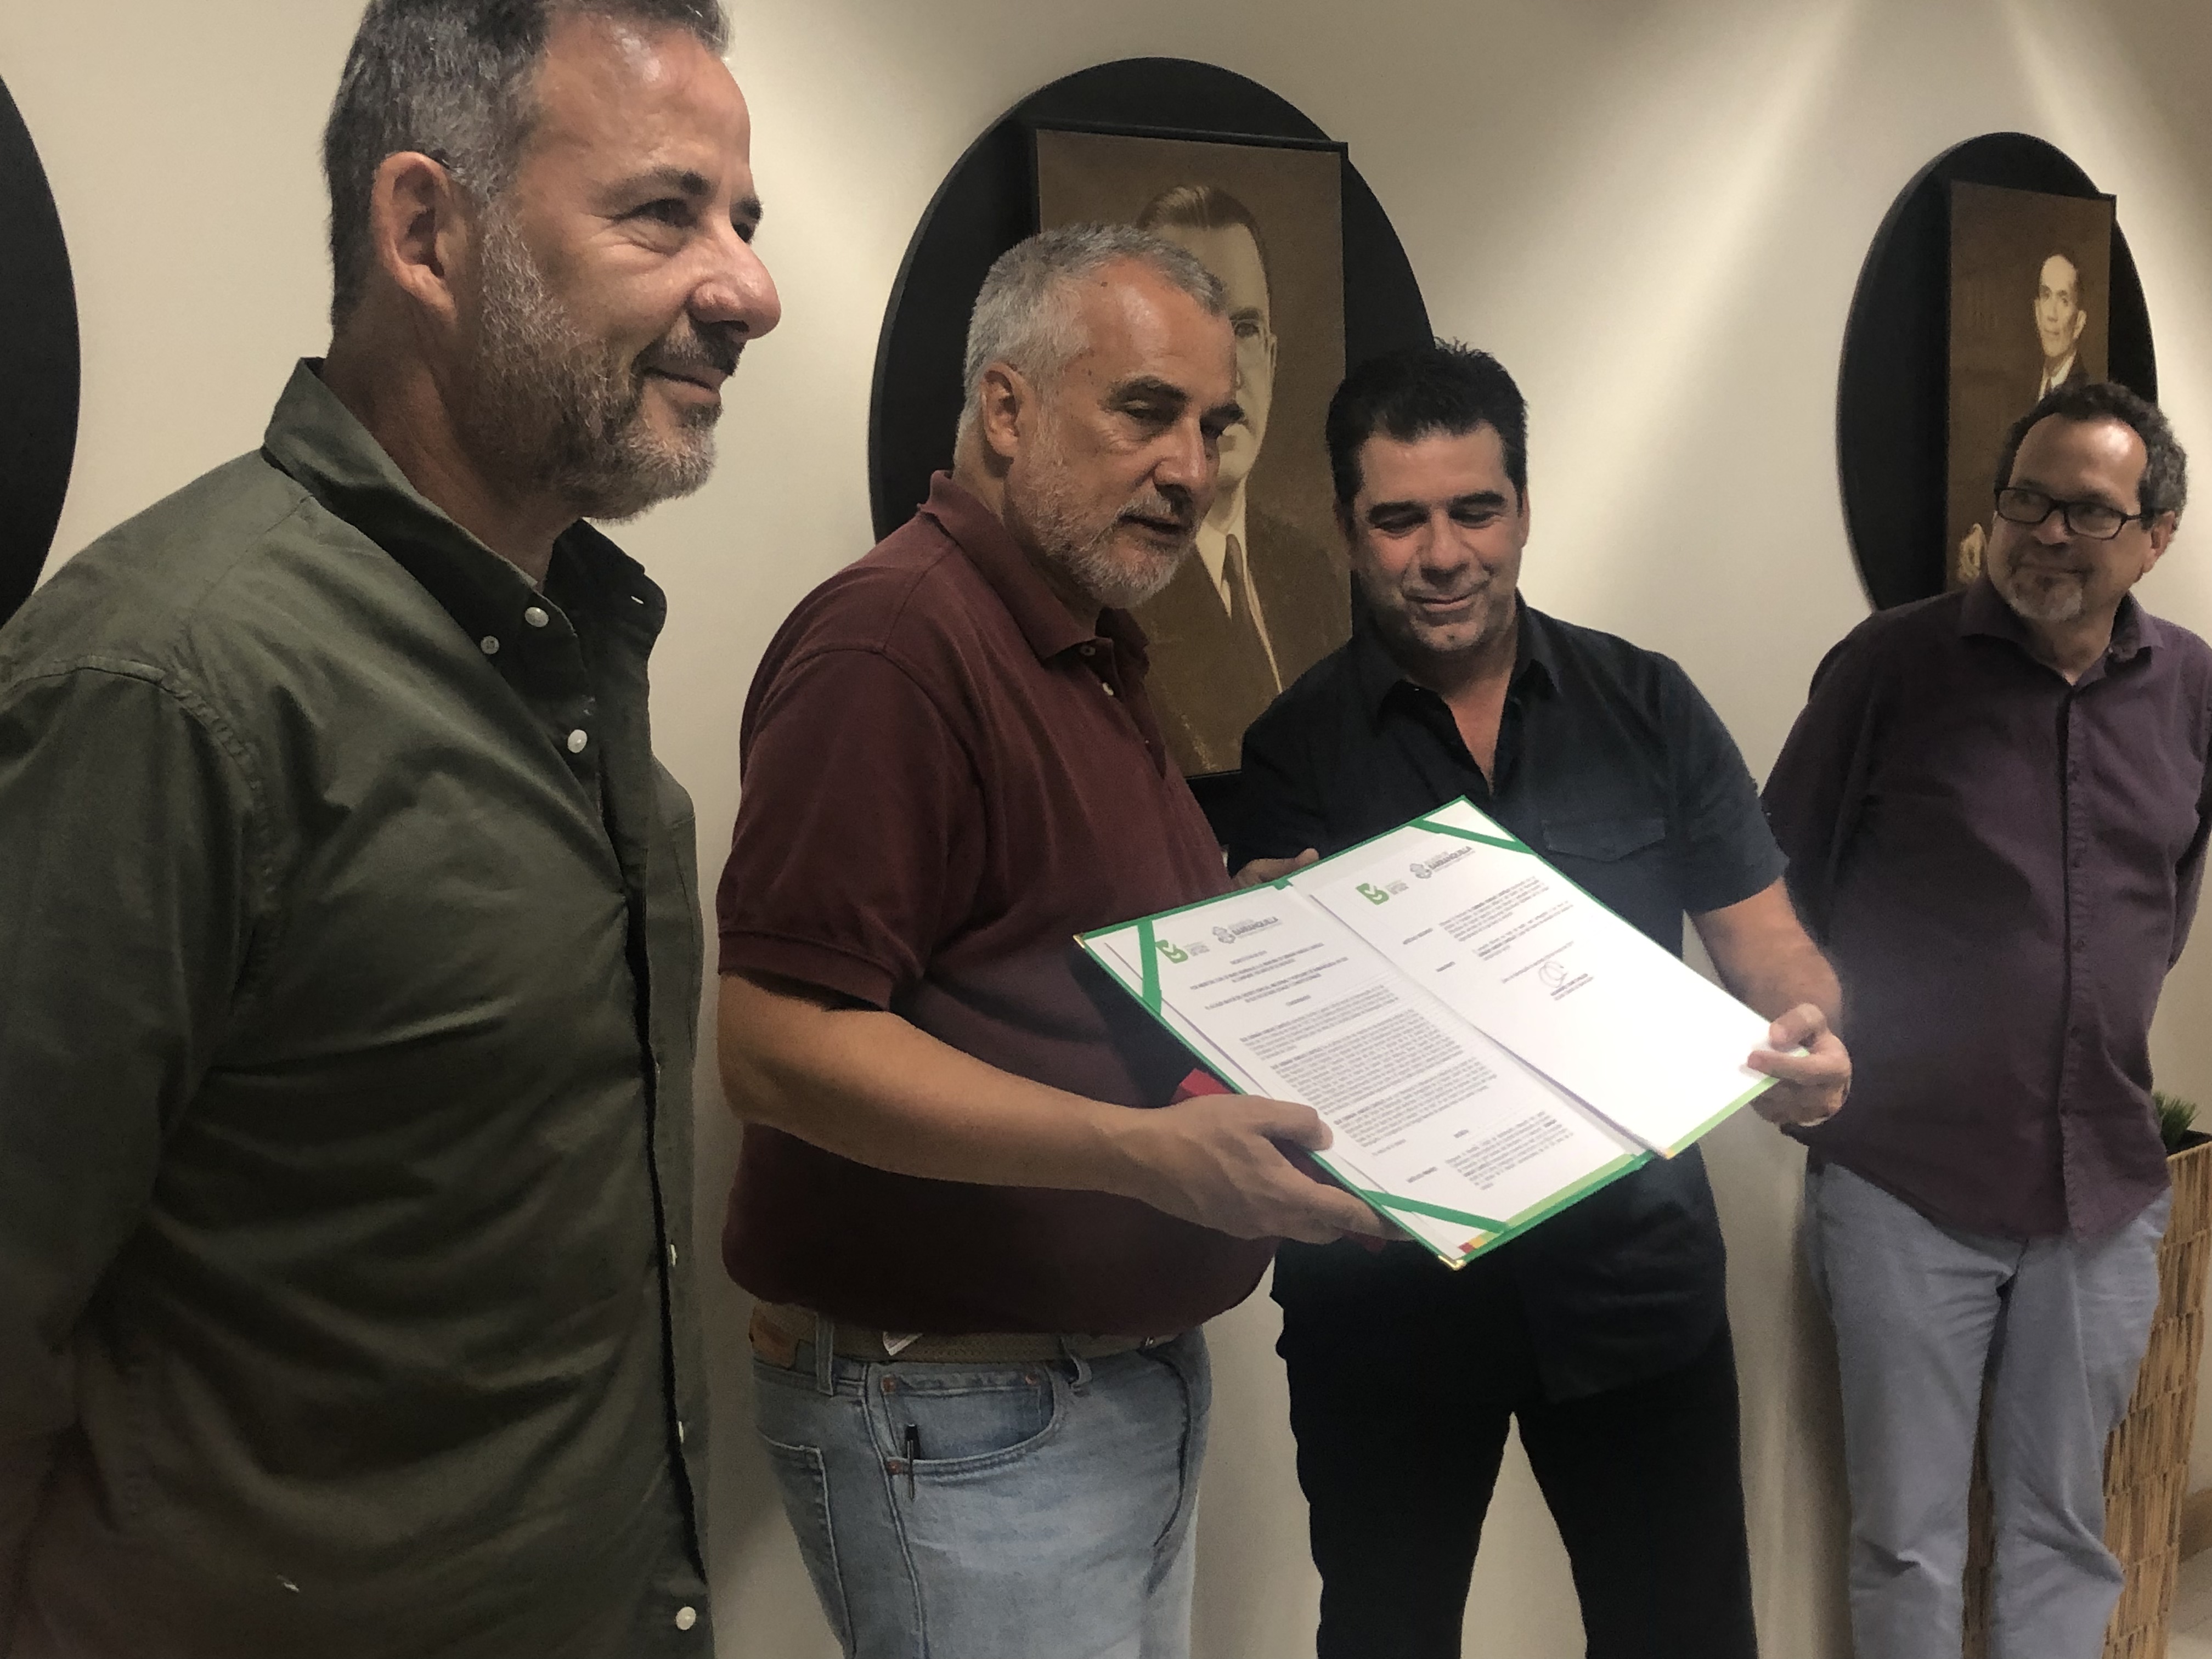 El alcalde de Barranquilla condecora a Darío Vargas a quien le informó que el portafolio de estímulos culturales de la ciudad llevará el nombre de su padre.